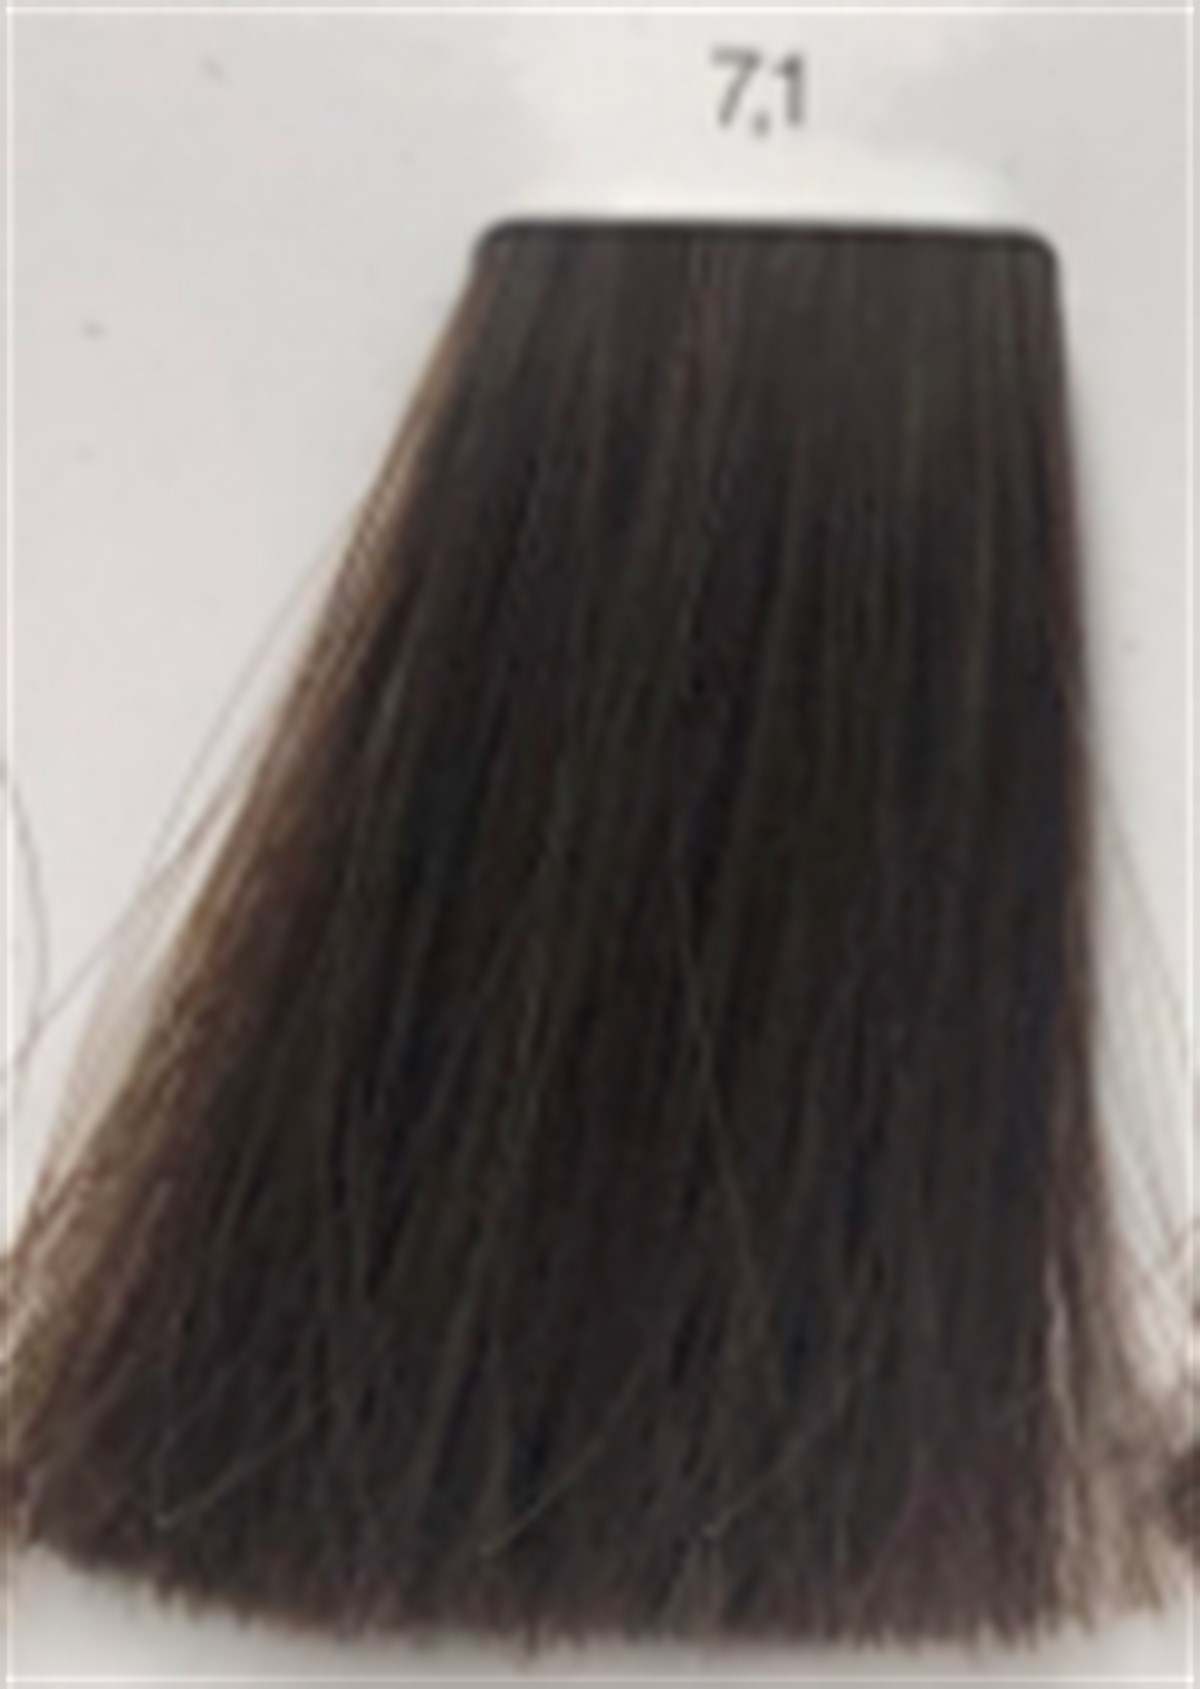 inoa saç boyası 7.1İNOA SAÇ BOYASI-www.arzumkozmetik.com